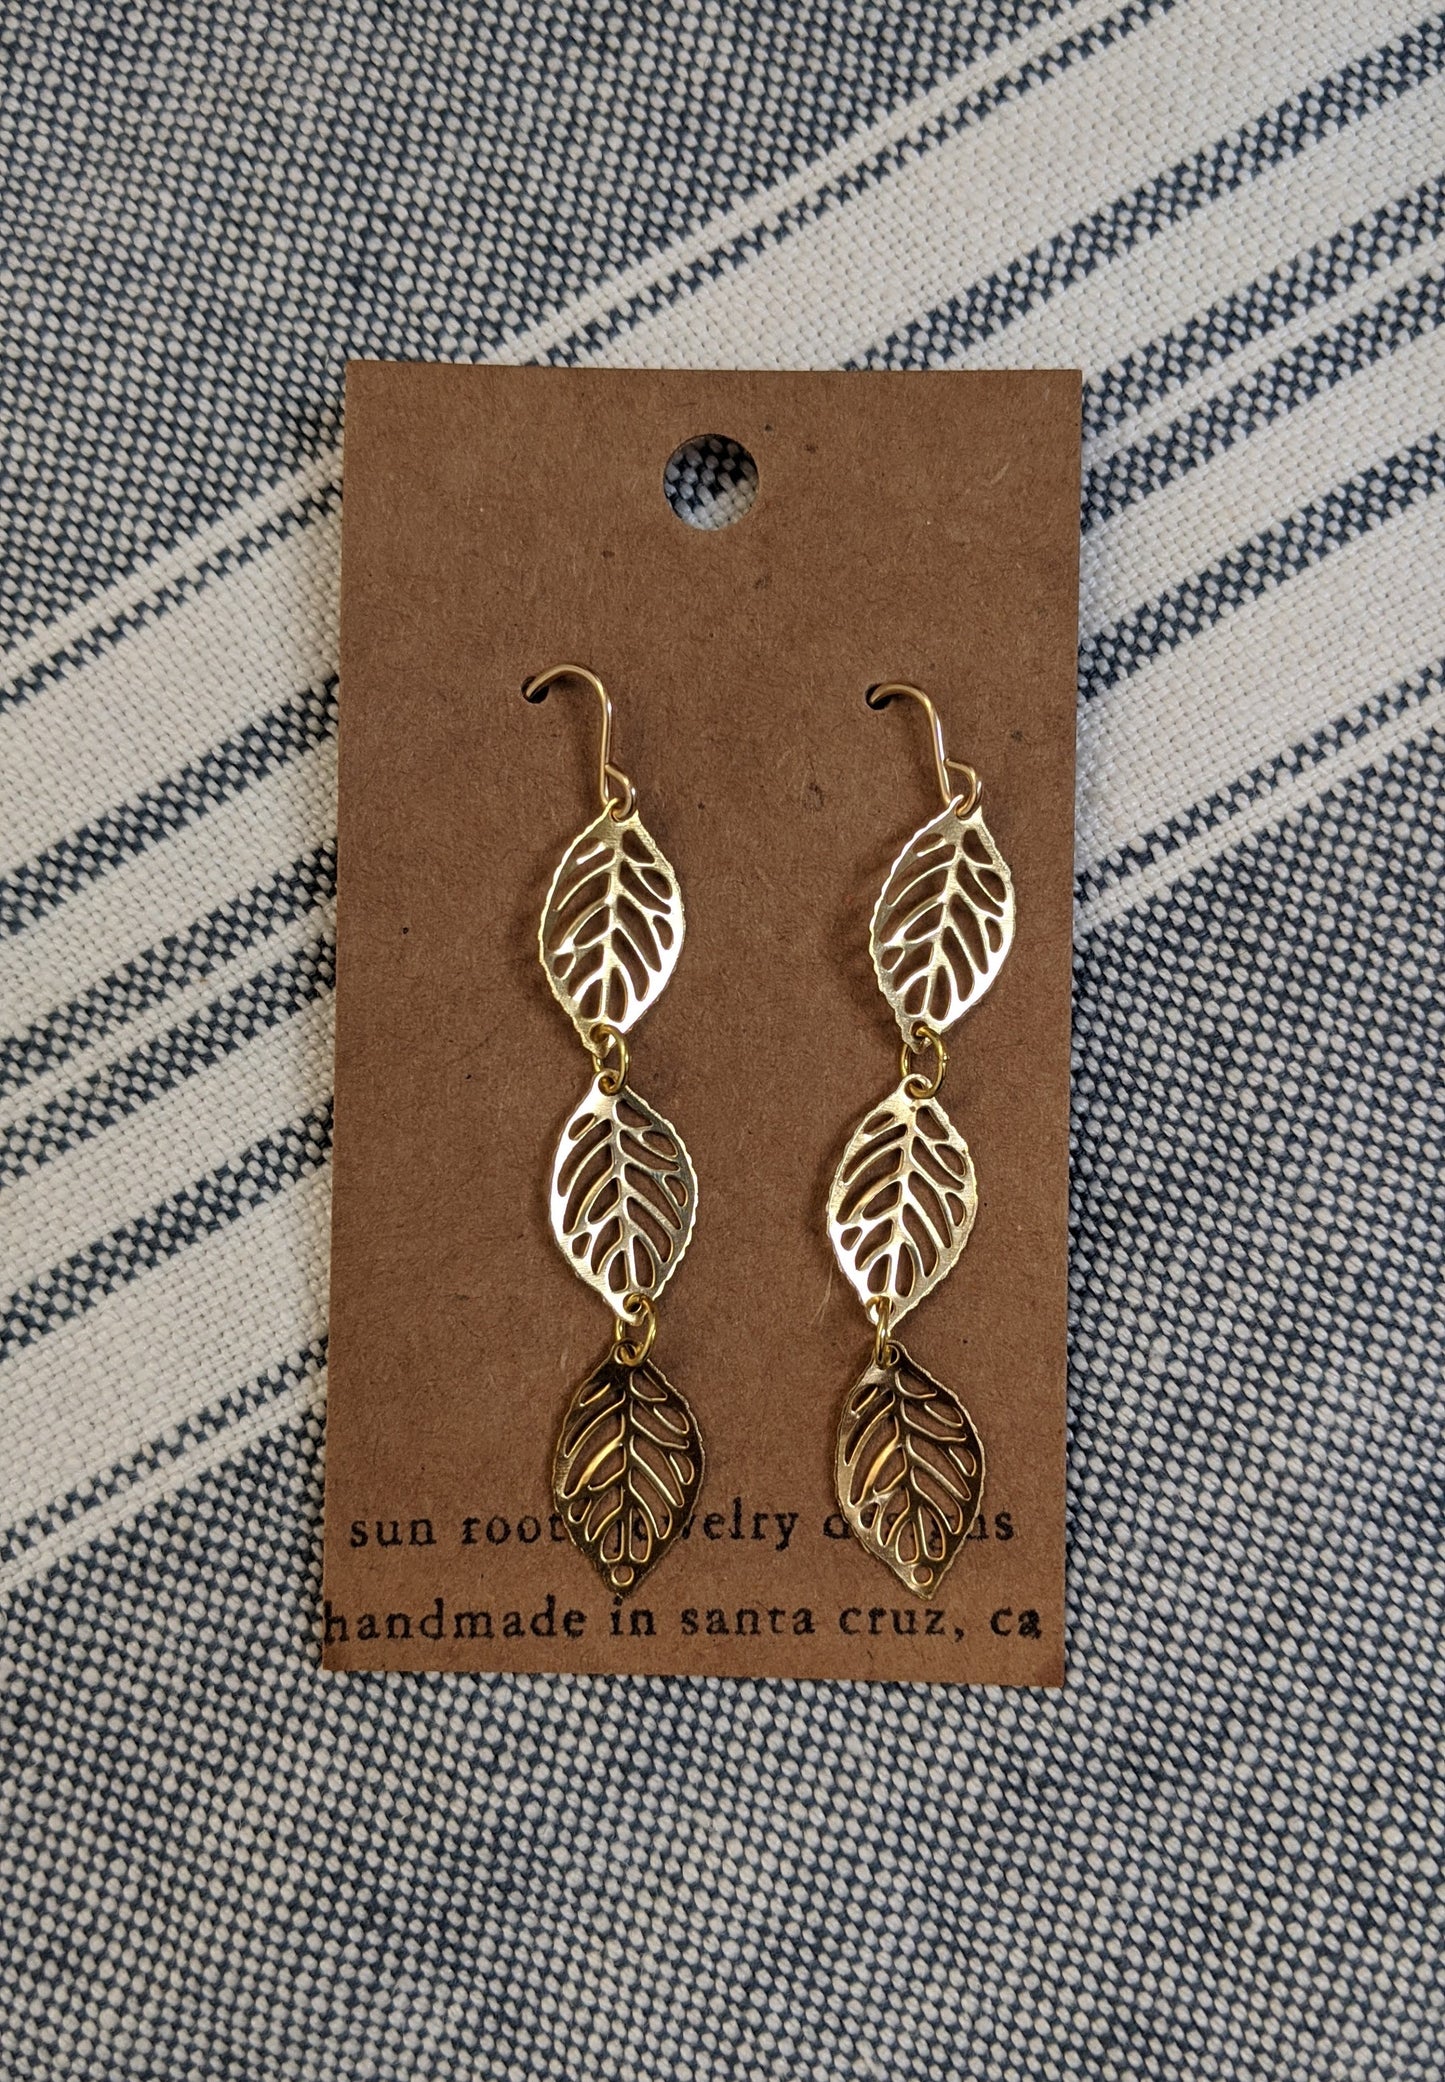 Triple leaf drop brass earrings by Sunroots Jewlery